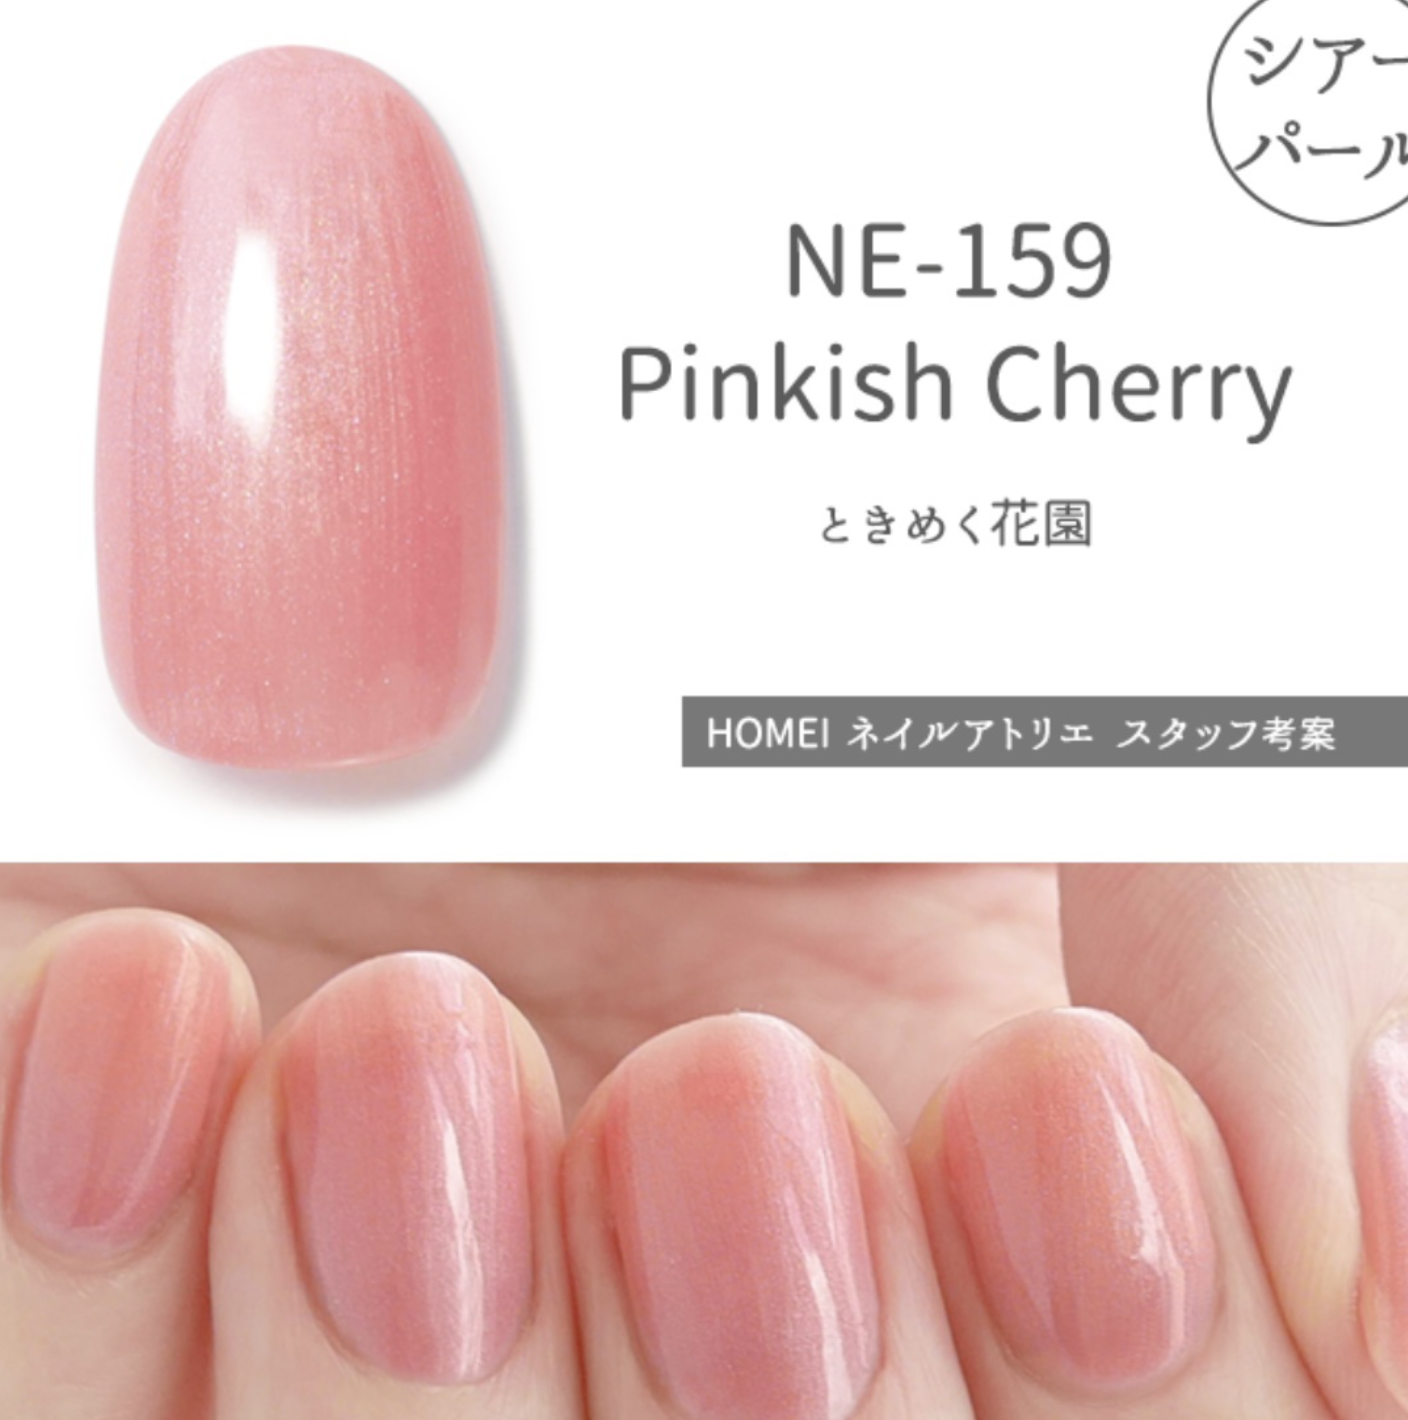 Homei Homei Weekly Gel NE-159 (Pinkish Cherry)